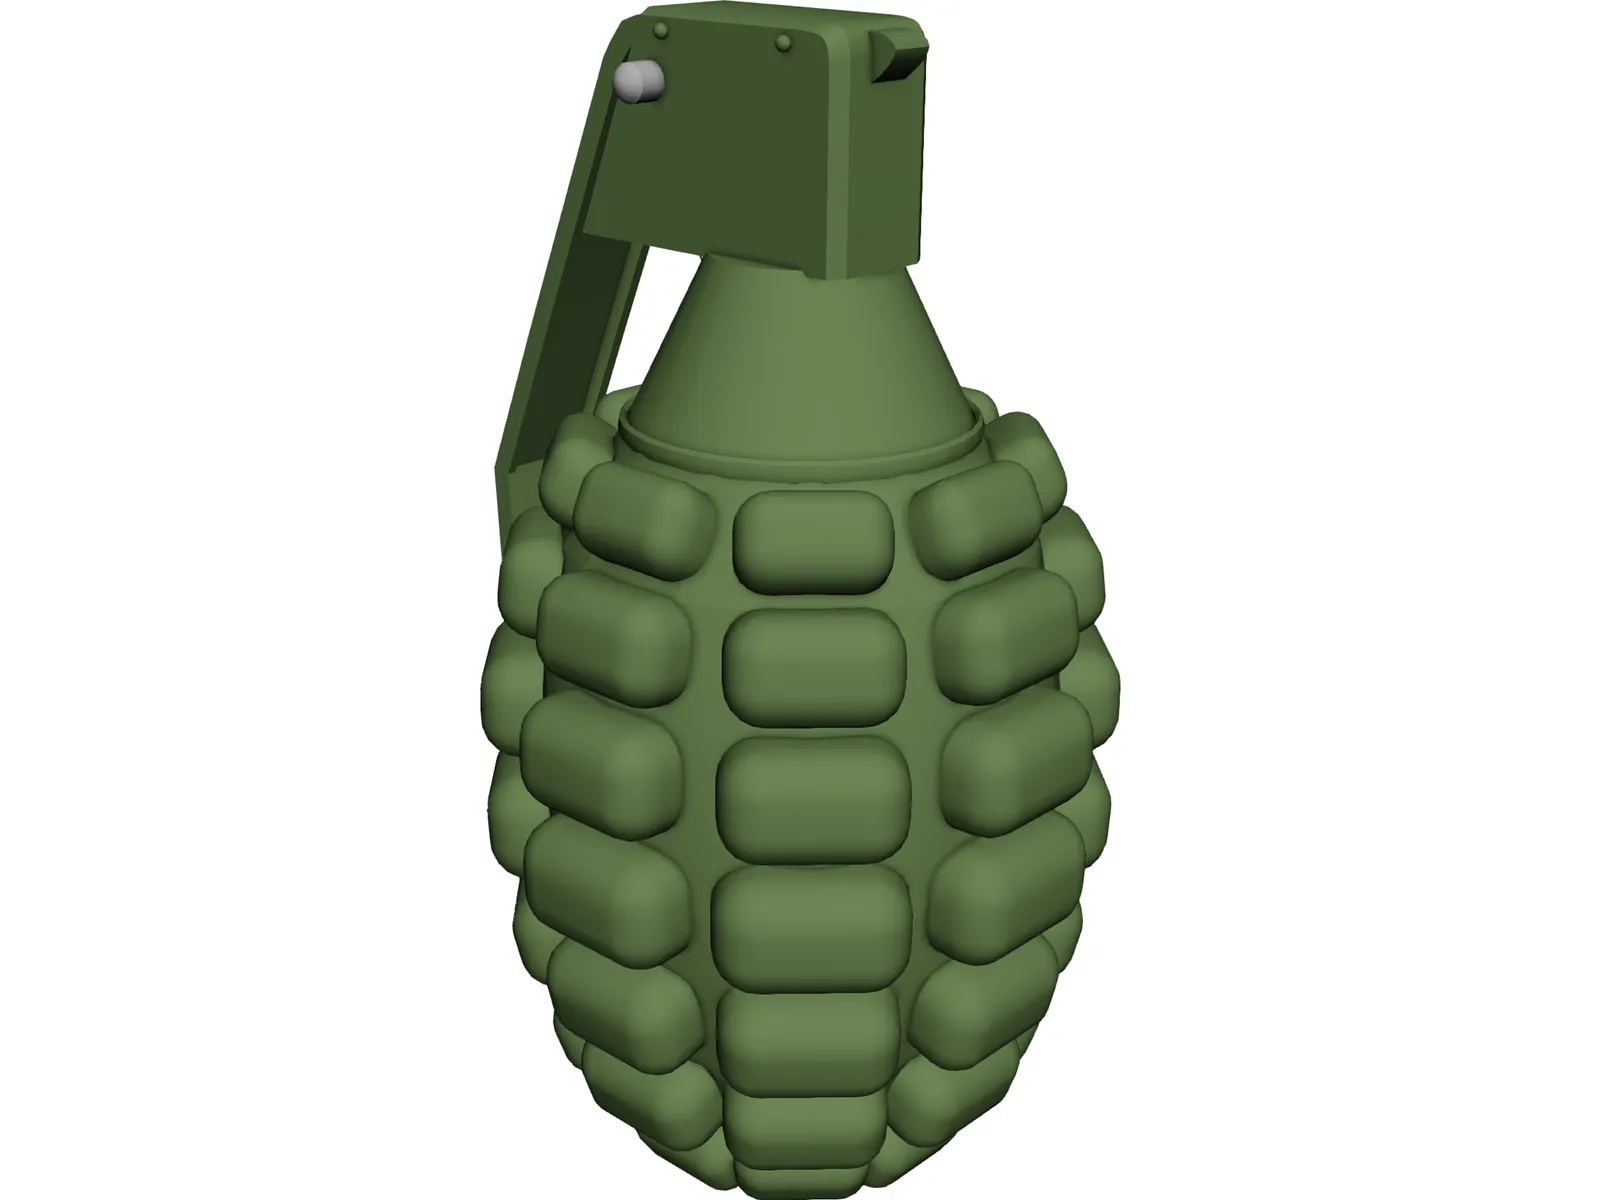 Pineapple Hand Grenade 3D Model